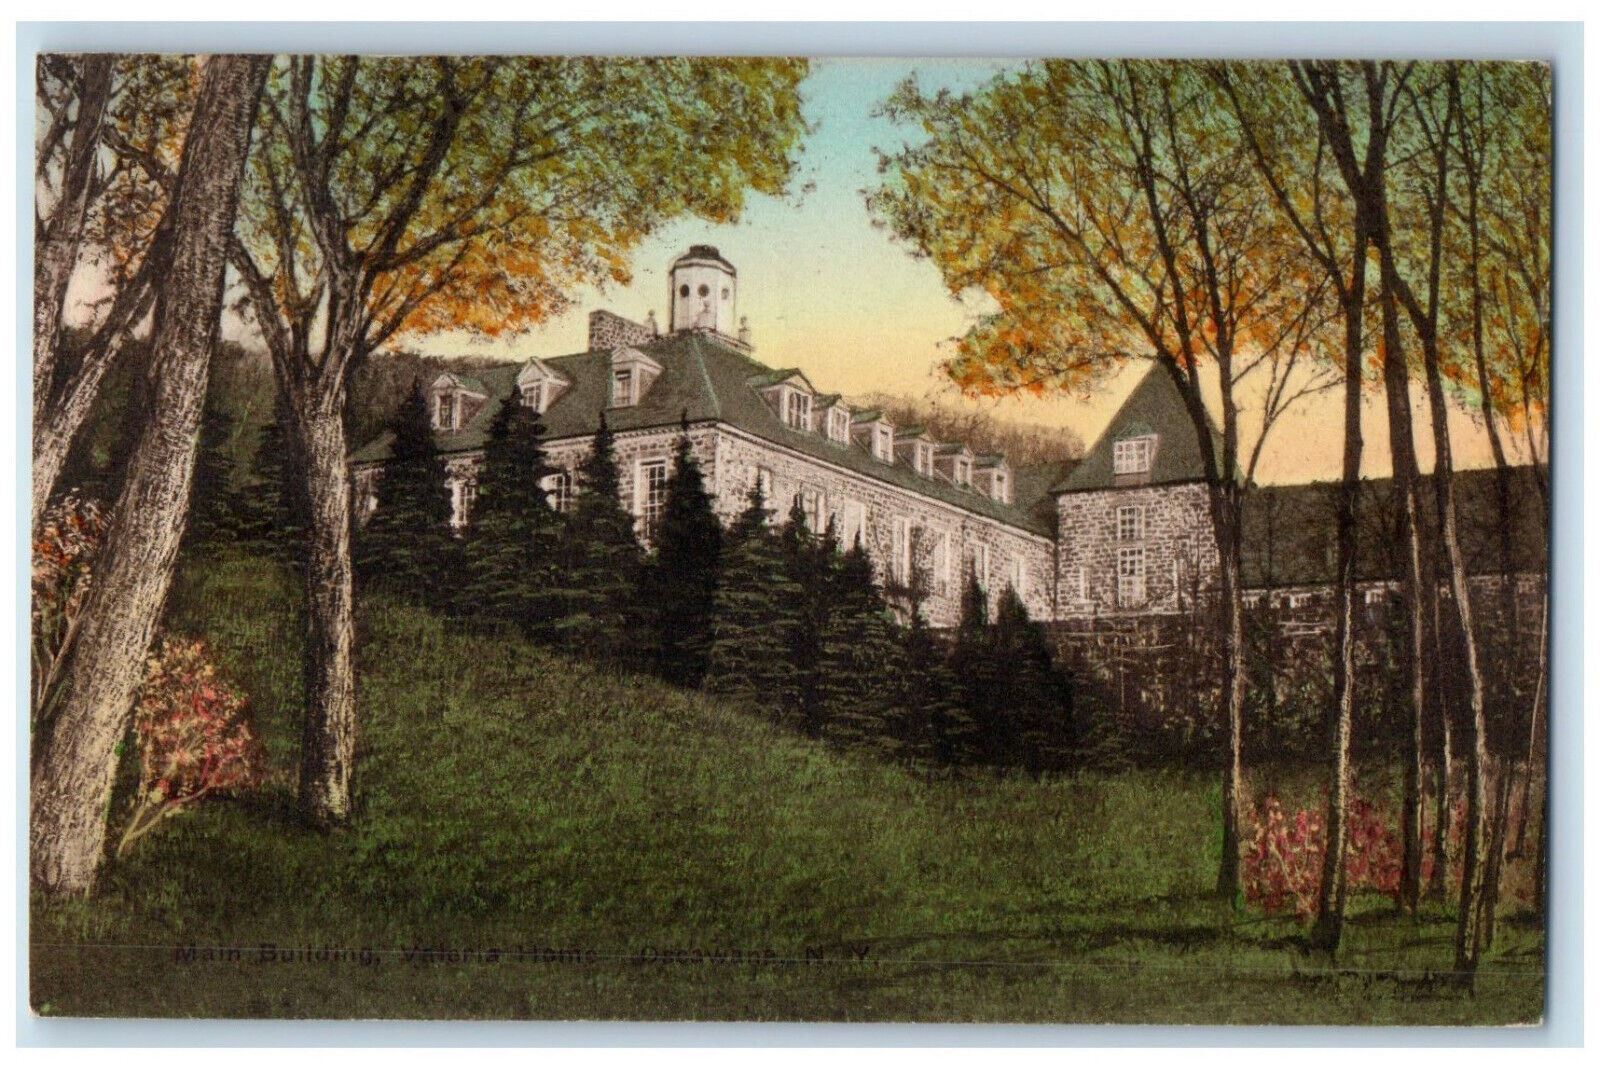 c1920's Main Building Valeria Home Oscawana New York NY Handcolored Postcard